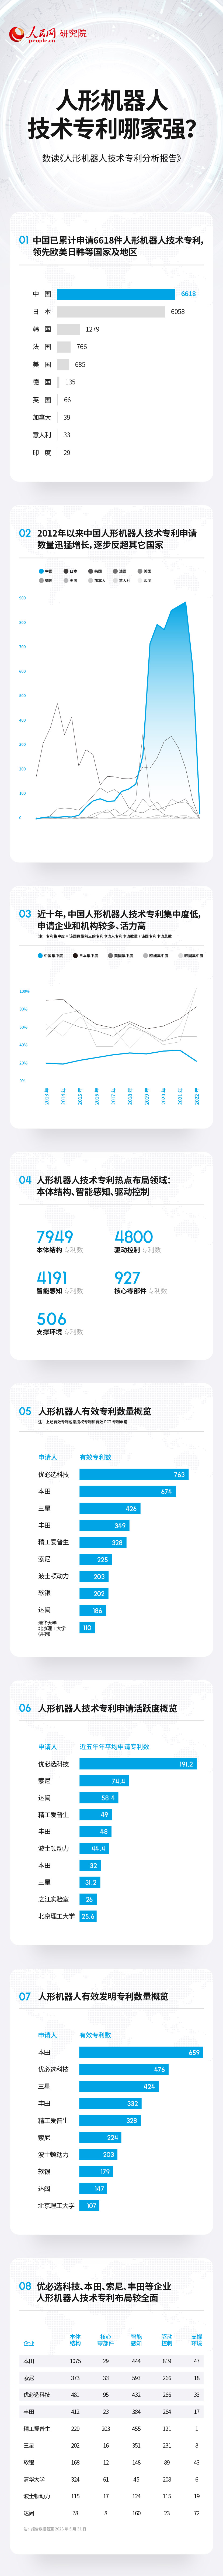 蓝狮在线1980：技术专利总数居前列 中国人形机器人产业蓬勃发展